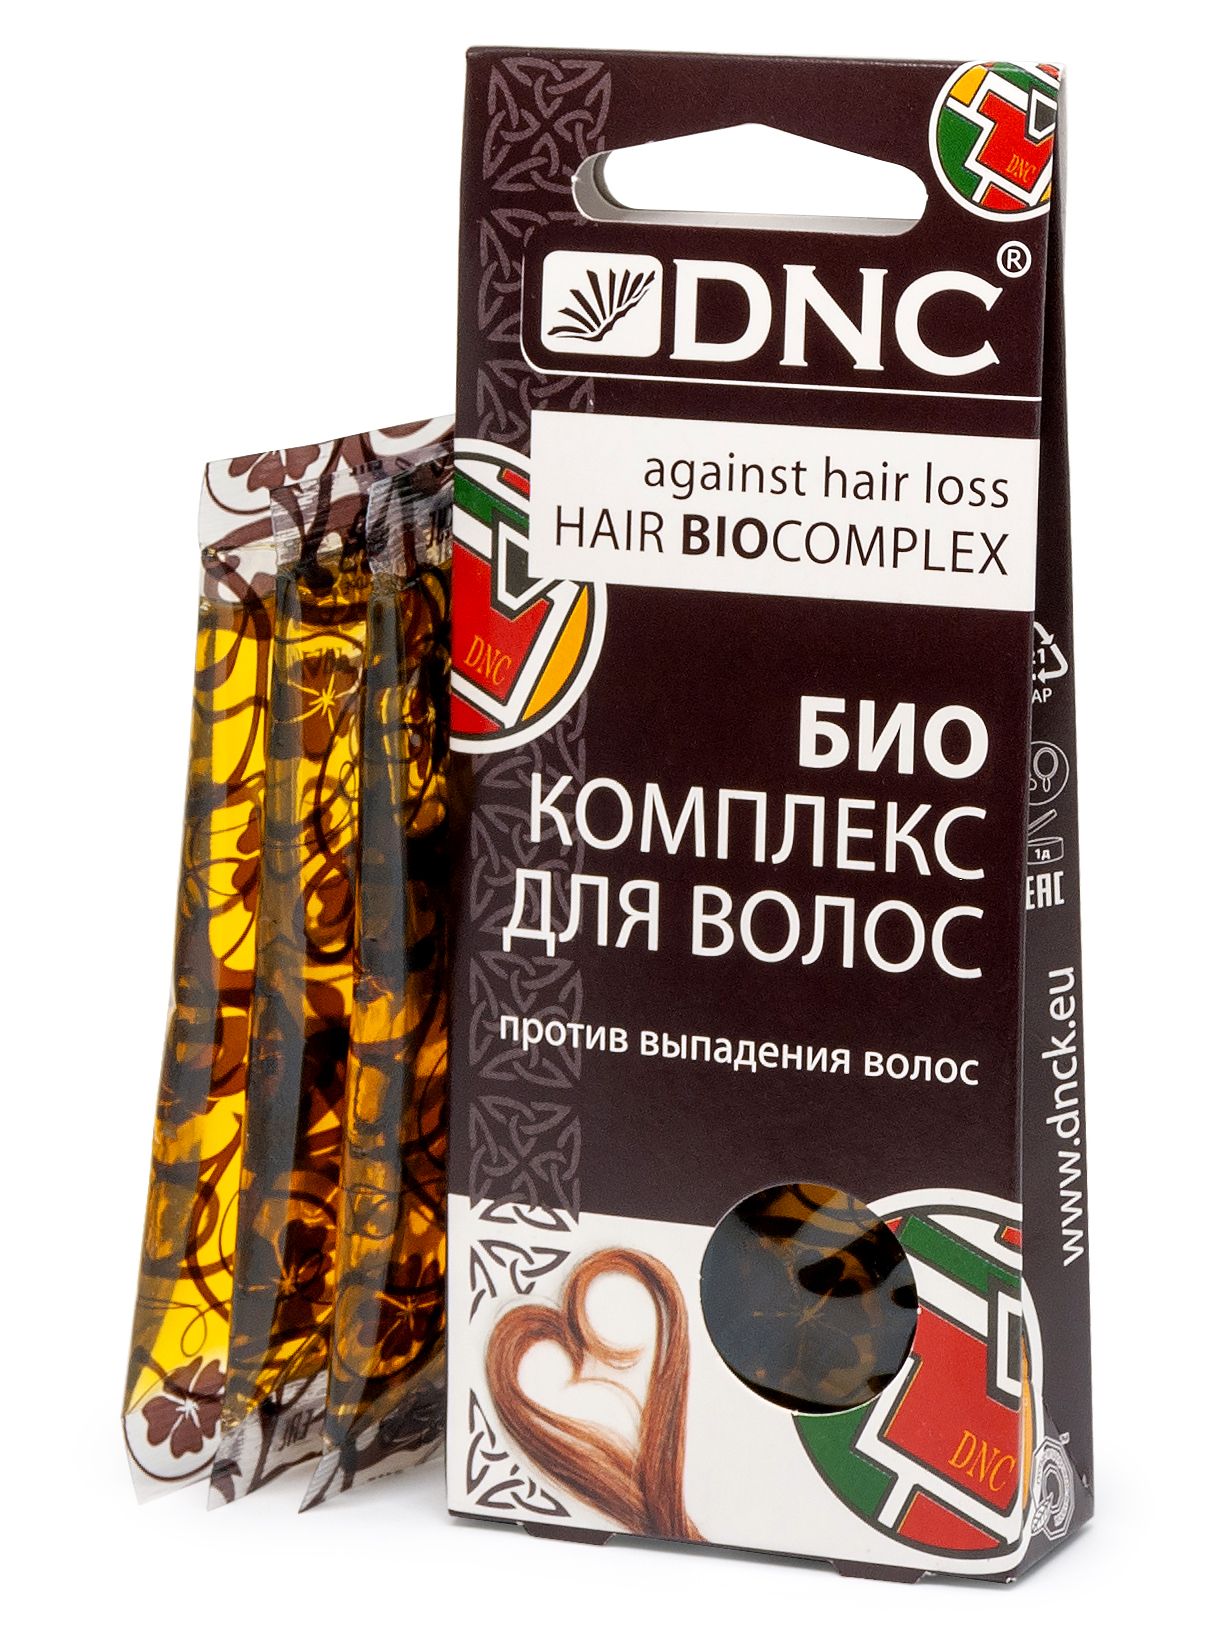 ДНЦ комплекс био против выпадения волос 15млх3